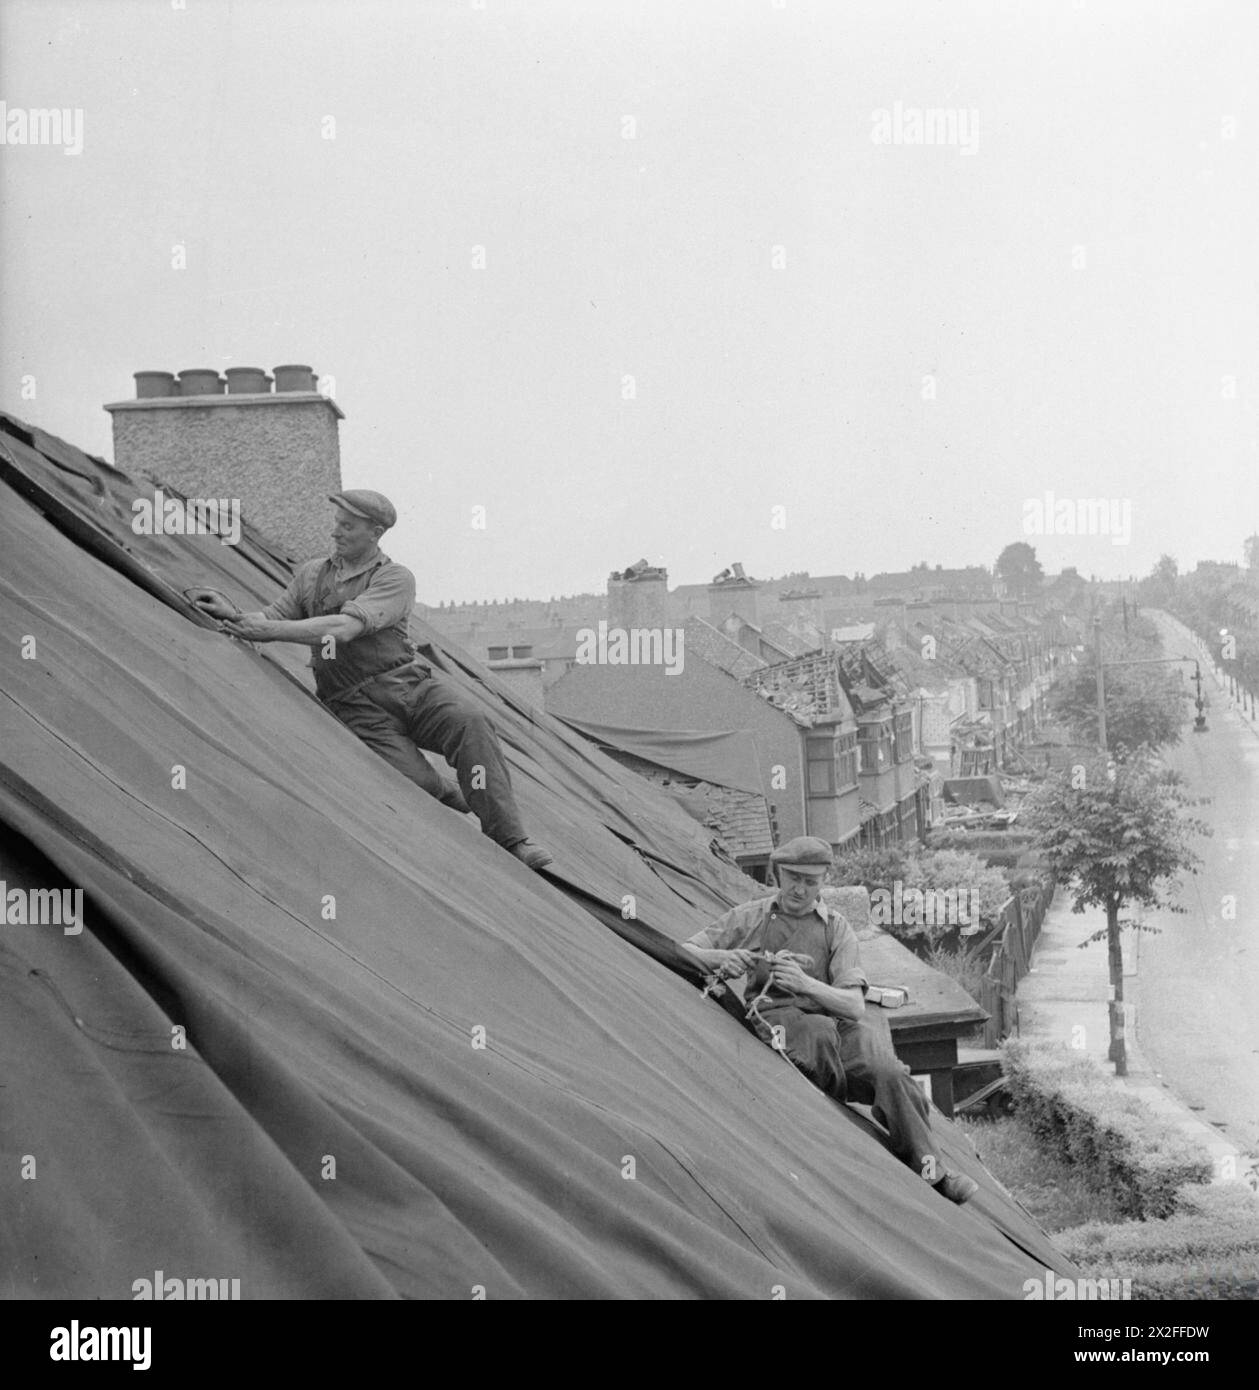 CAMPO DI RIPARAZIONE BLITZ A LONDRA: LA VITA DI TUTTI I GIORNI CON LE SQUADRE DI RIPARAZIONE BLITZ, LONDRA, INGHILTERRA, Regno Unito, 1944 - i costruttori della "Blitz Repair Squad" posero teloni sui tetti delle case per proteggere gli interni dagli elementi a seguito di un attacco V1, che danneggiò la maggior parte delle case della strada. Questi costruttori fanno parte di una grande squadra che si è recata a Londra da varie parti del paese per aiutare a riparare tali danni Foto Stock